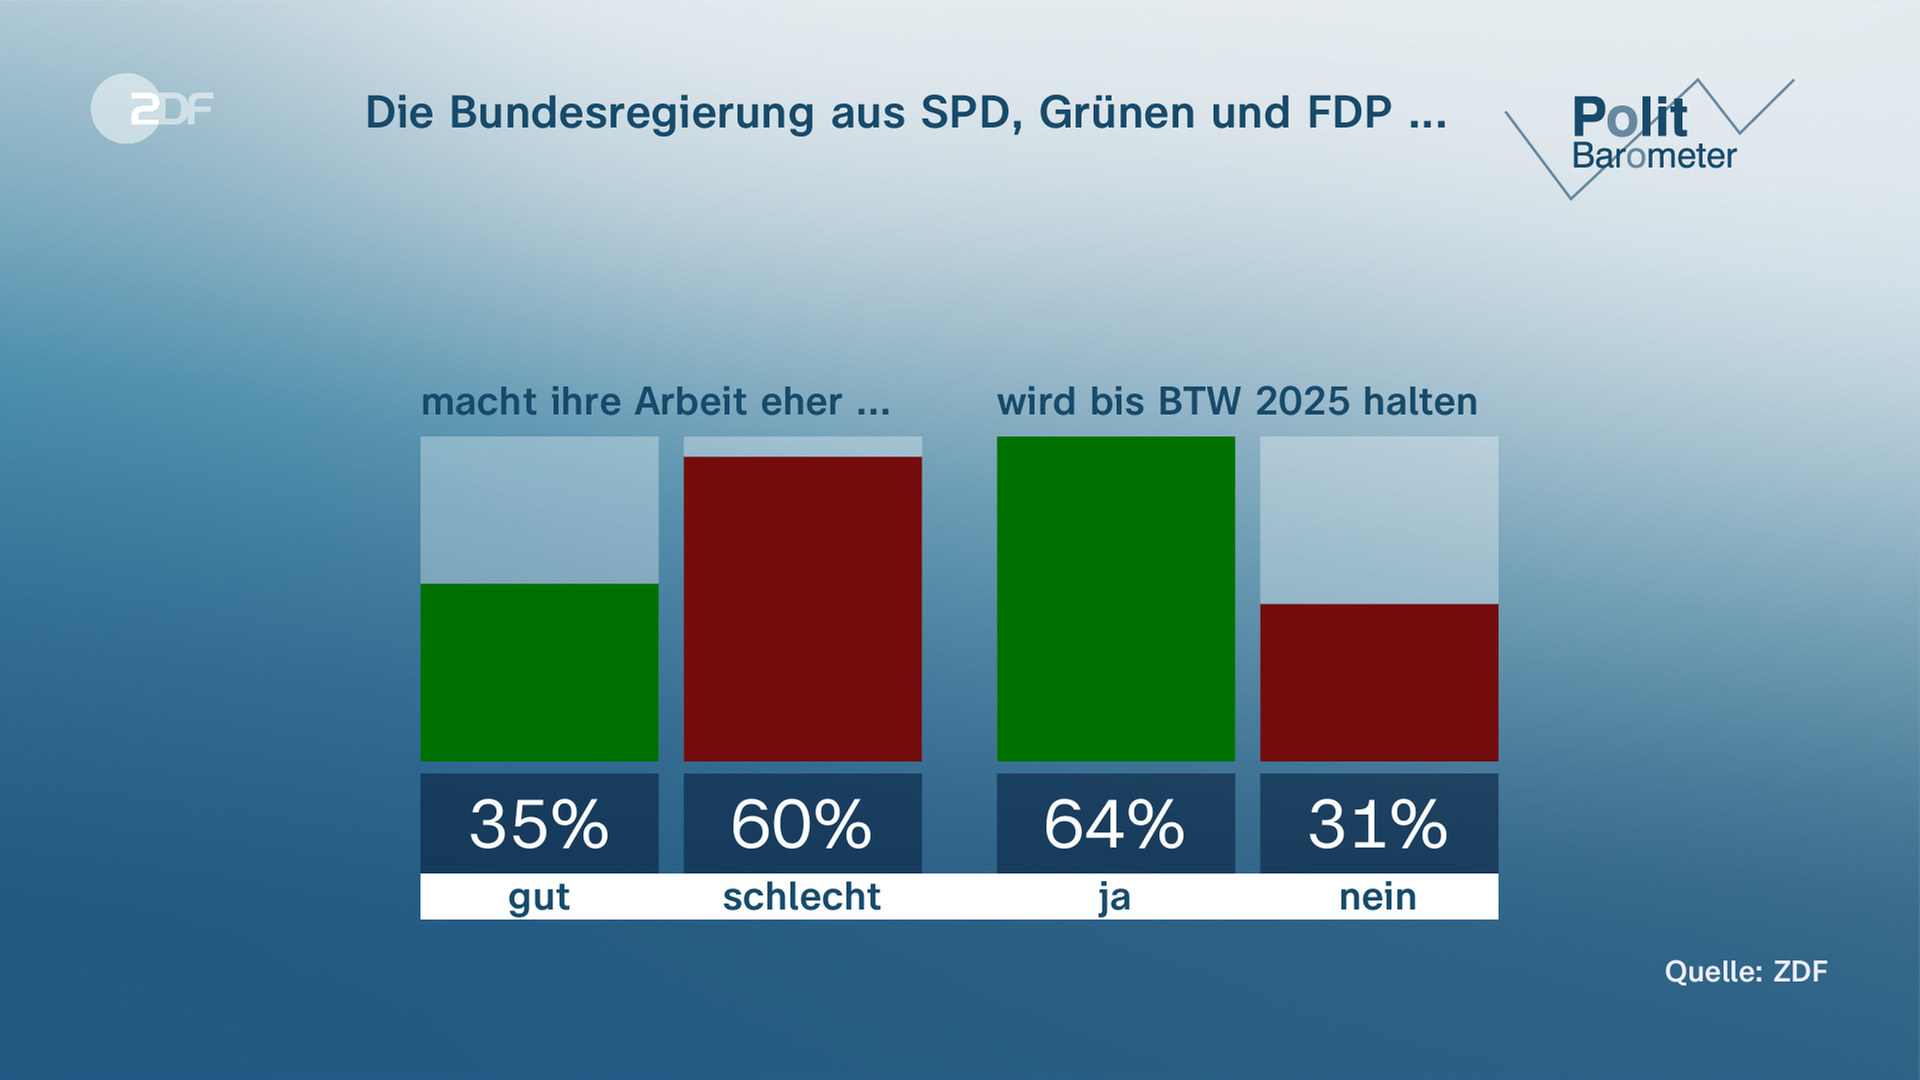 Politbarometer: Die Bundesregierung aus SPD, Grünen und FDP 